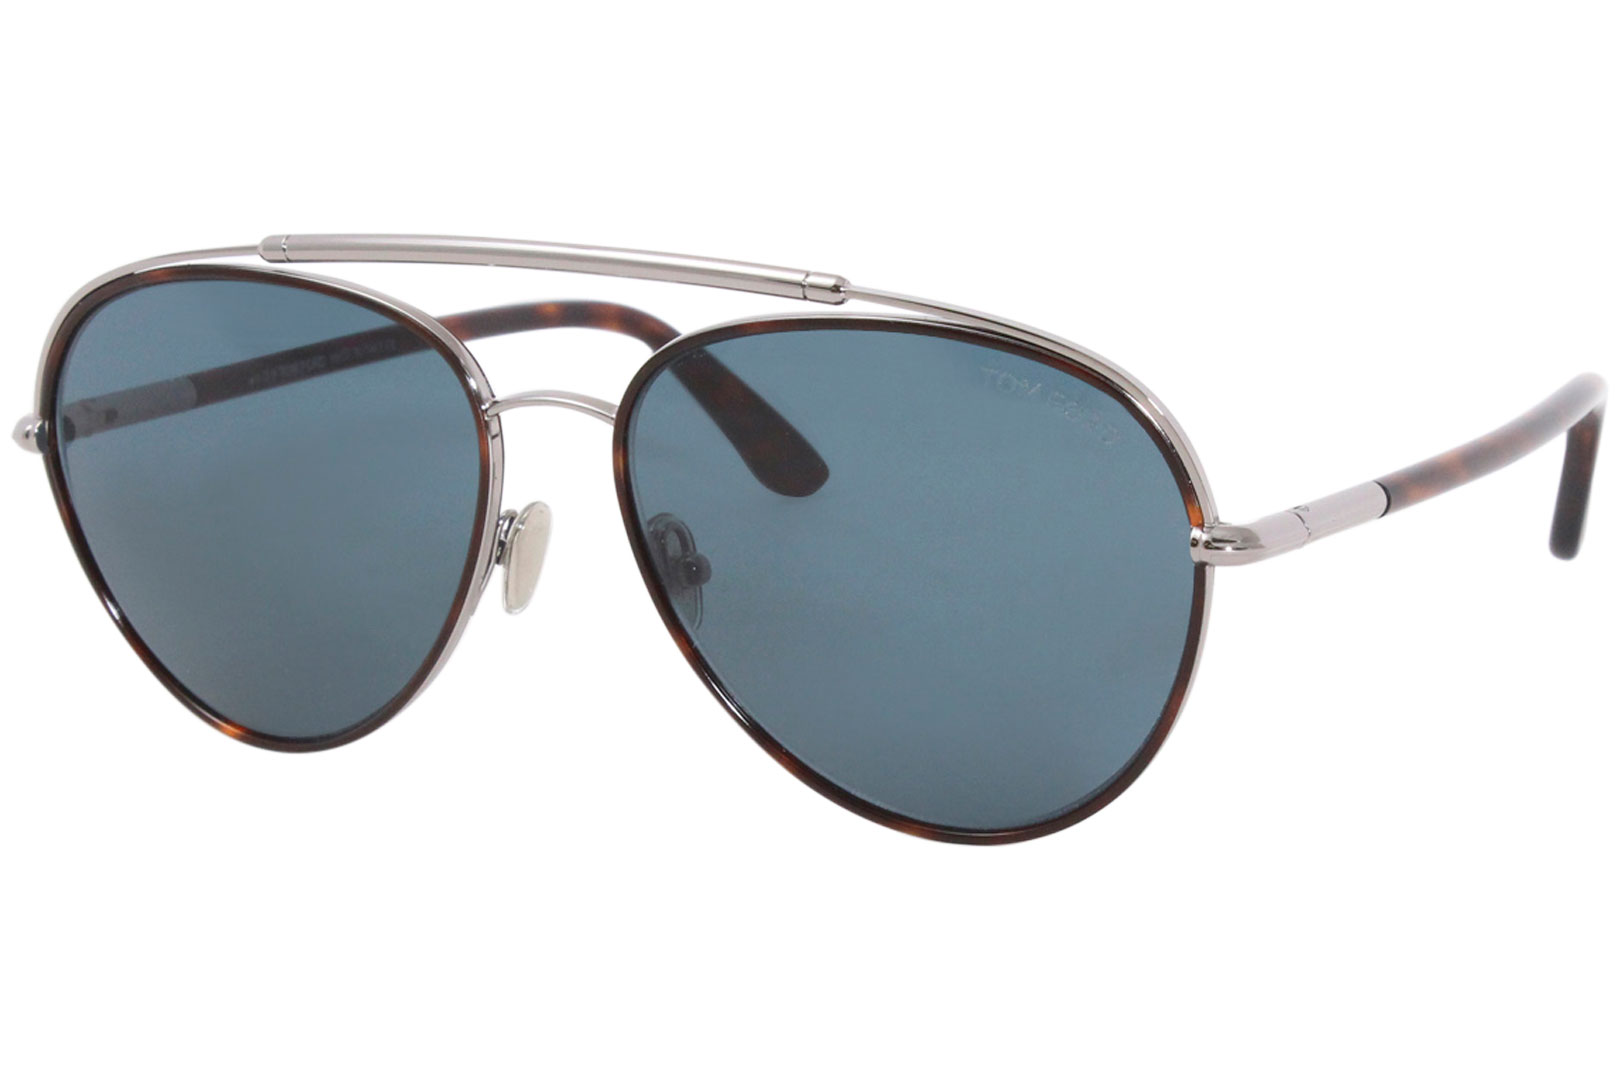 Tom Ford Curtis TF748 Sunglasses Men's Pilot Shades | JoyLot.com